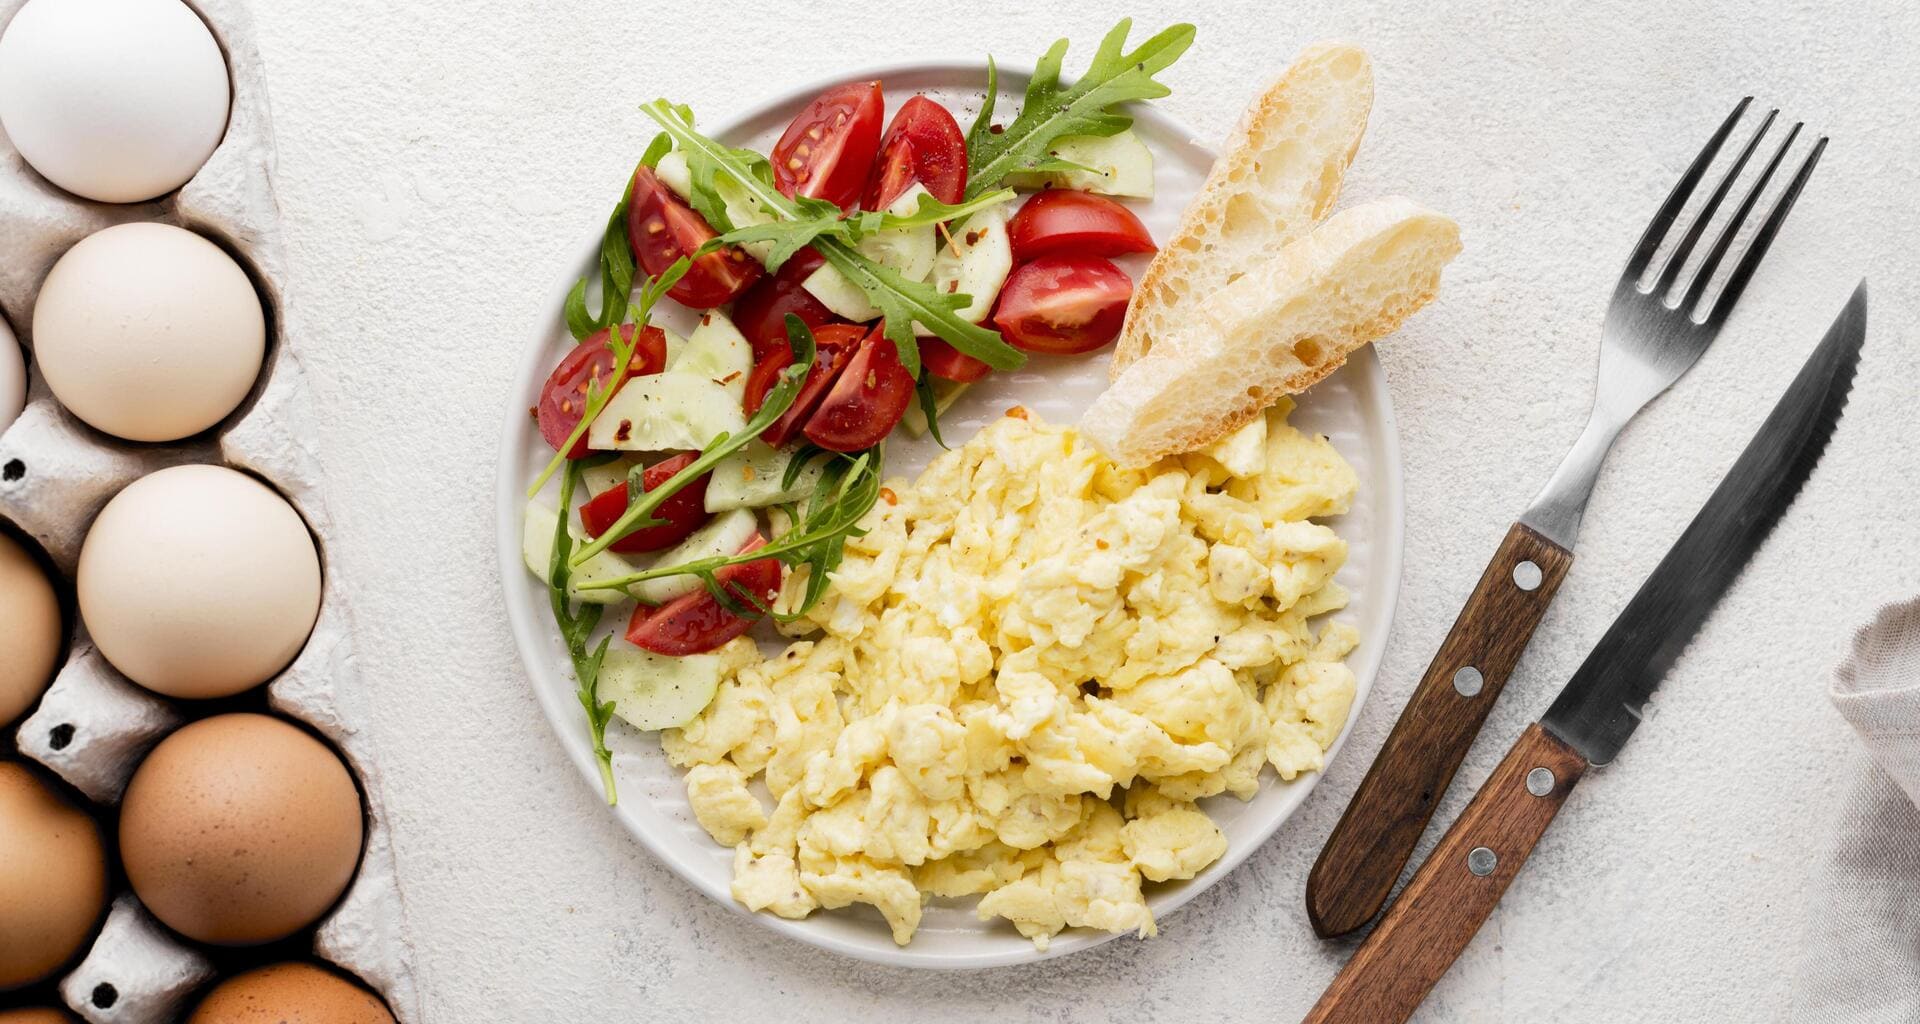 Découvrez la meilleure recette d’œufs brouillés pour un délicieux petit-déjeuner!